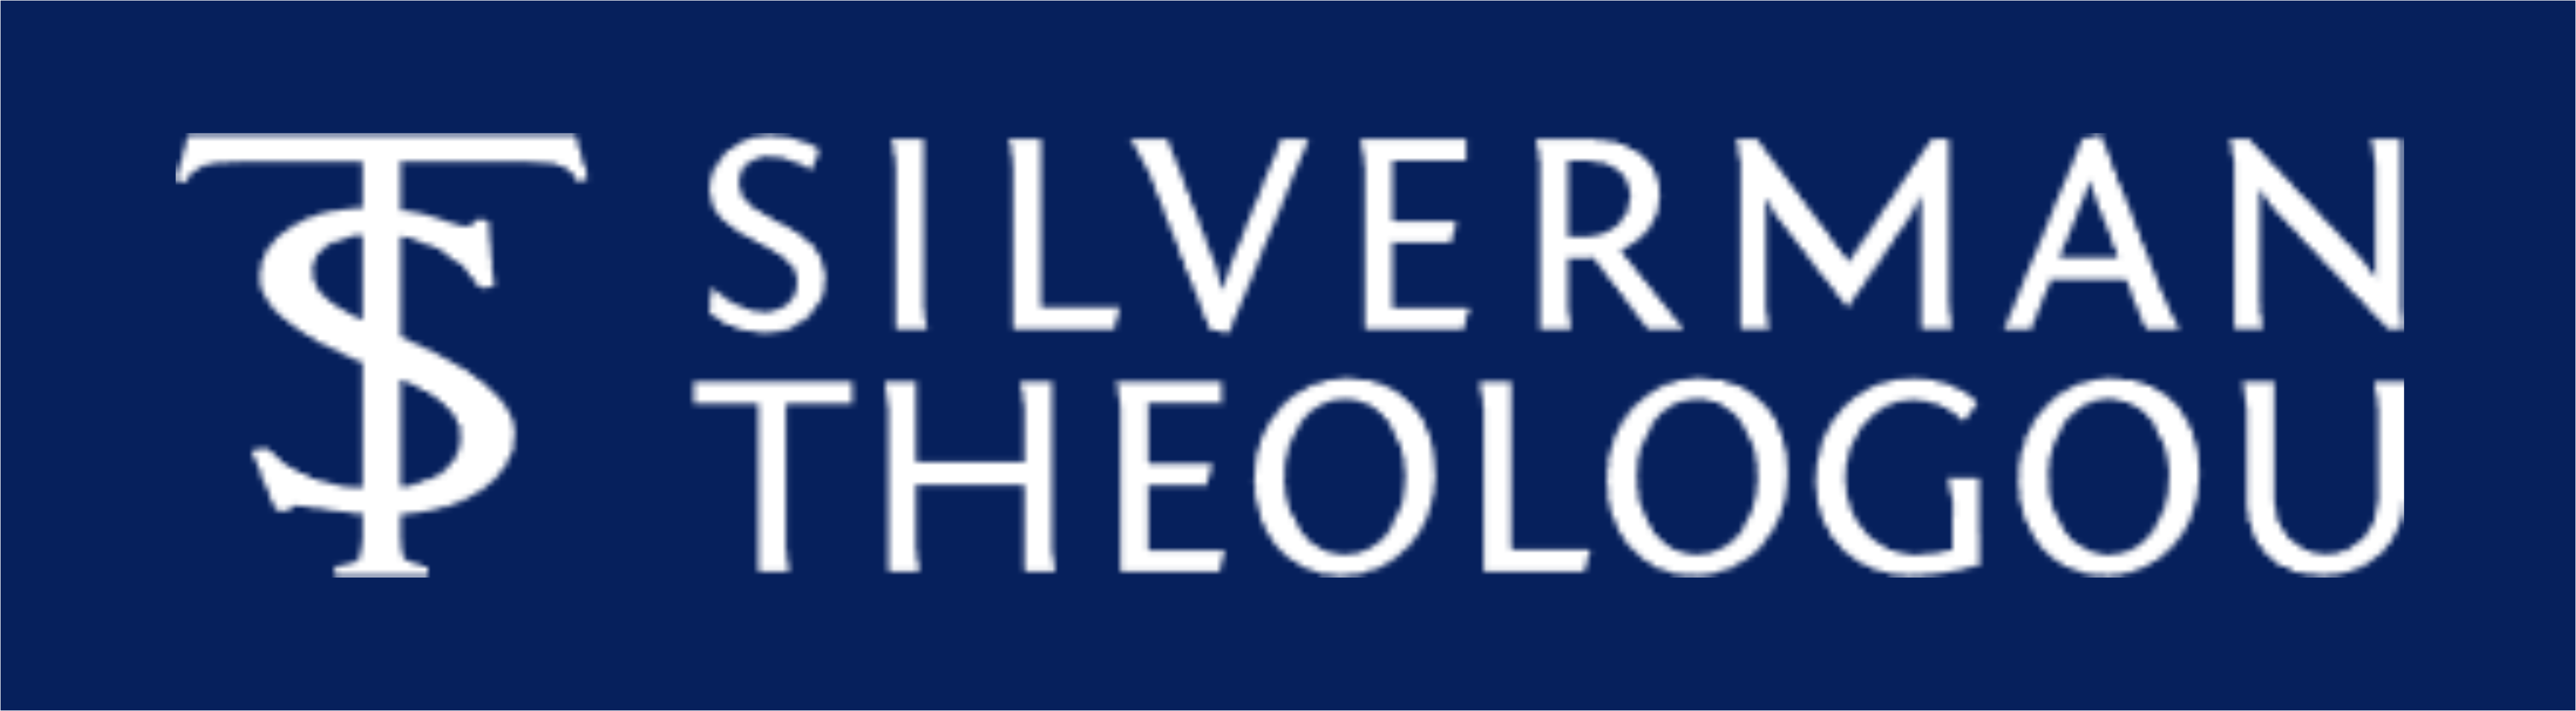 Silverman & Teheologou Logo